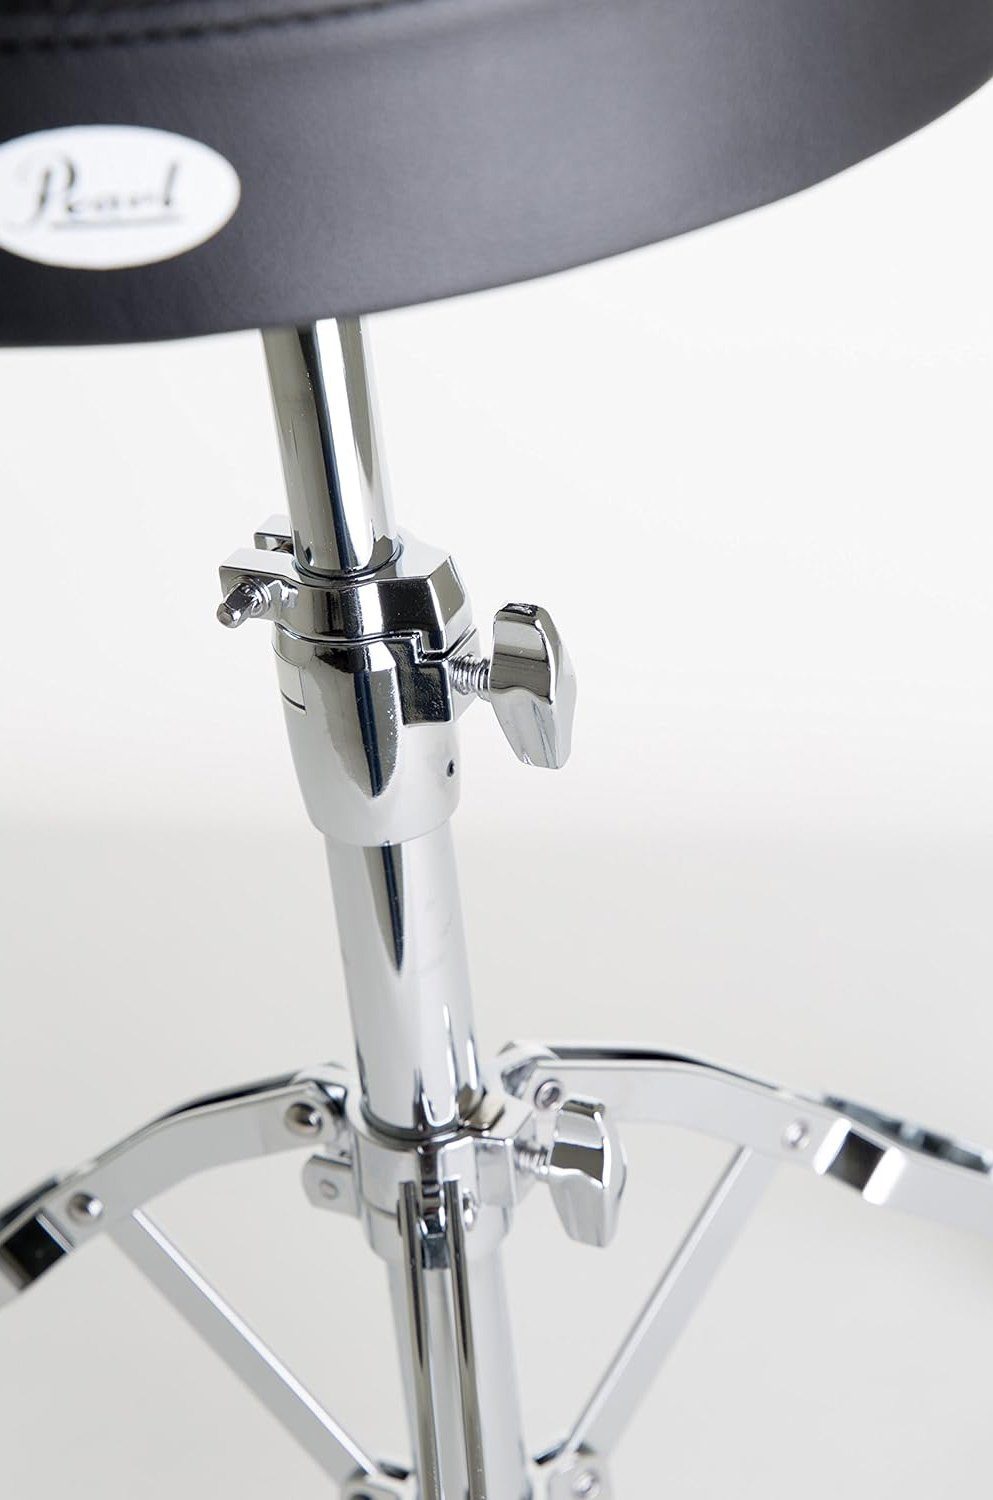 Pearl Drums schwarz), Höhenverstellbar Schlagzeughocker (Rundsitz, D-790